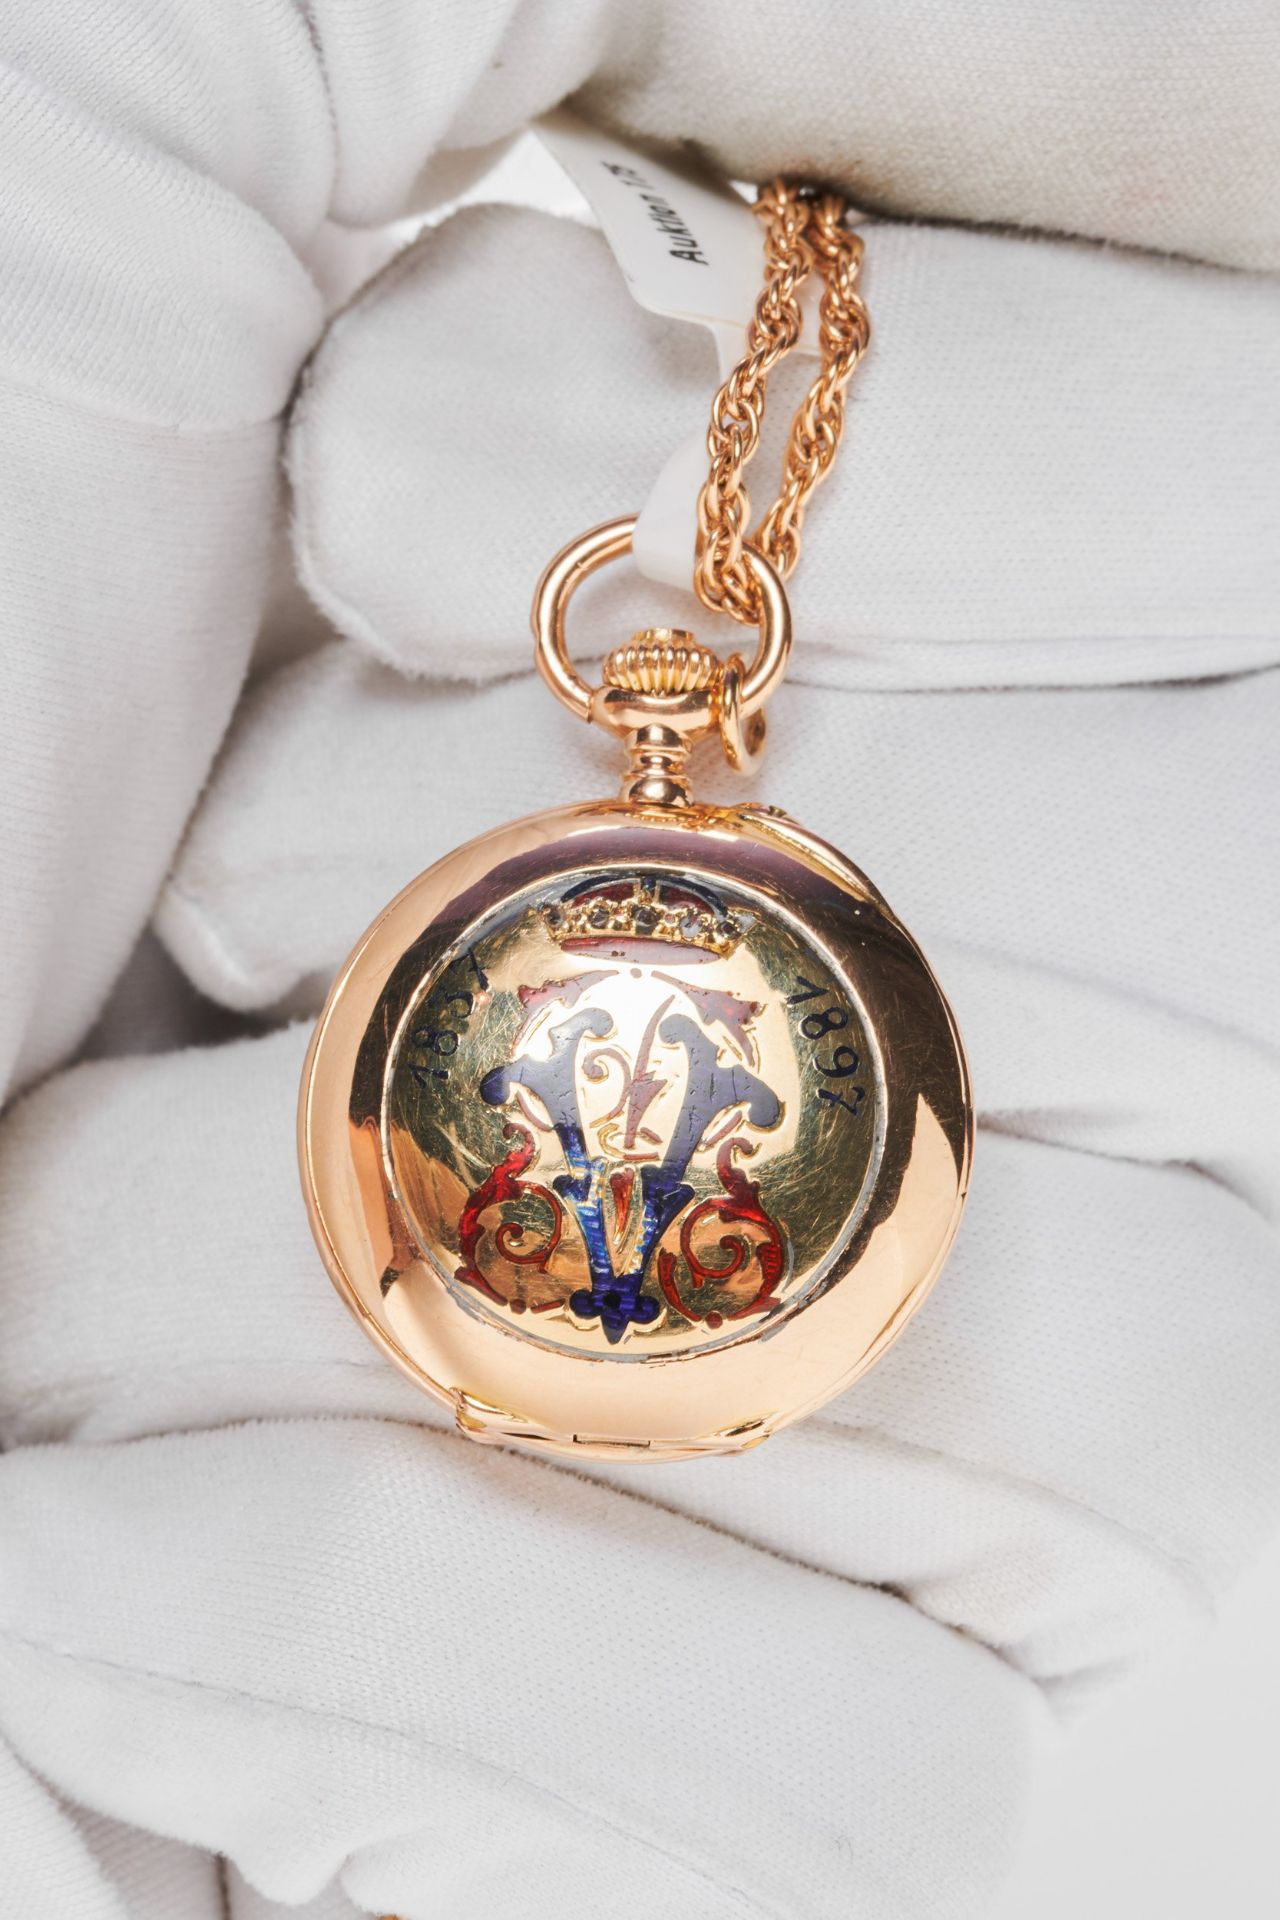 Pocket watch "Queen Victoria" - Image 2 of 12